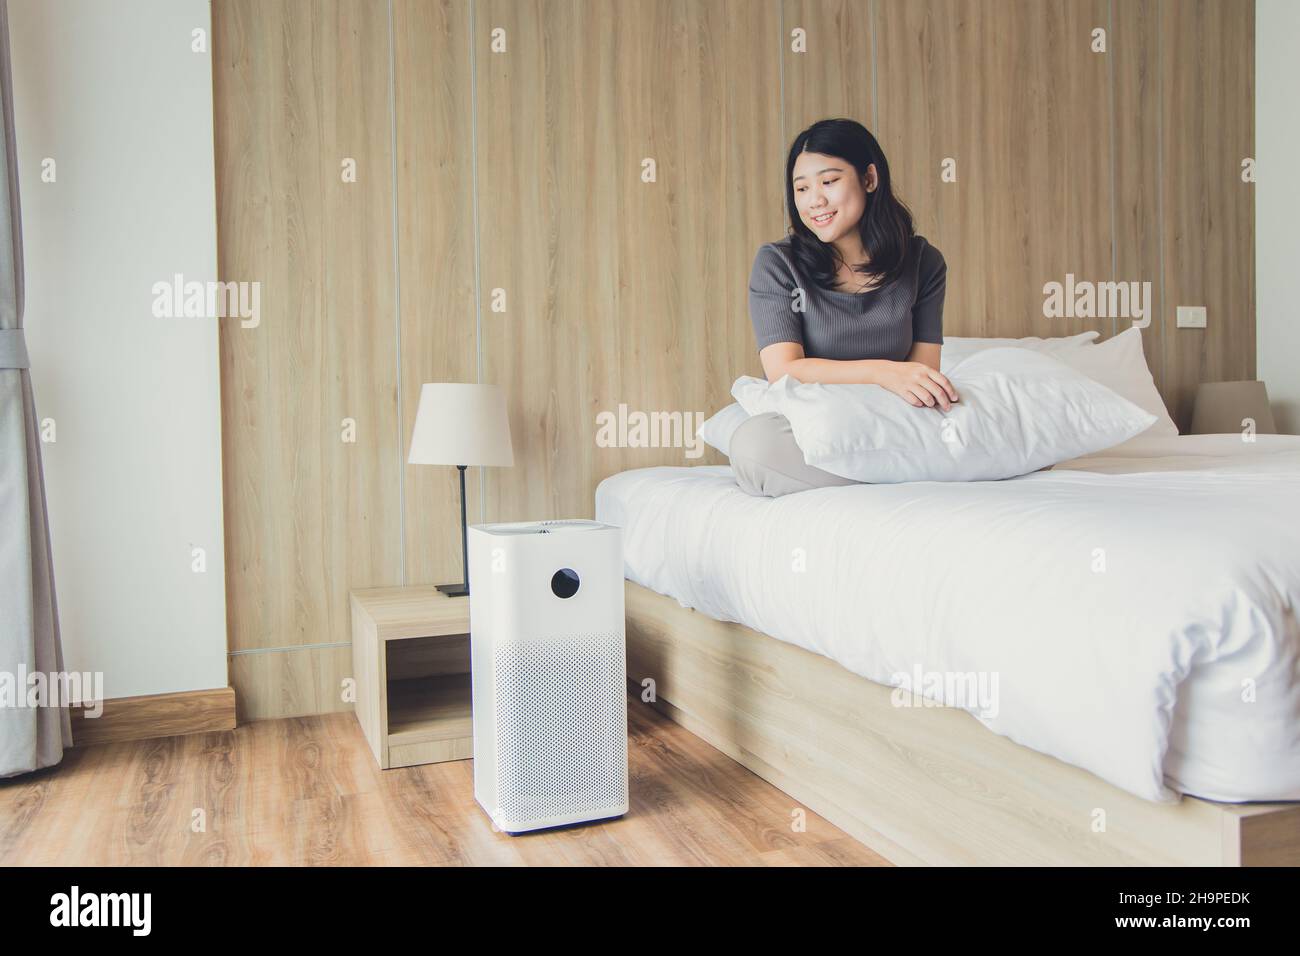 Personale sanitario che utilizza il purificatore d'aria o il condizionatore d'aria per aria pulita in camera da letto Foto Stock